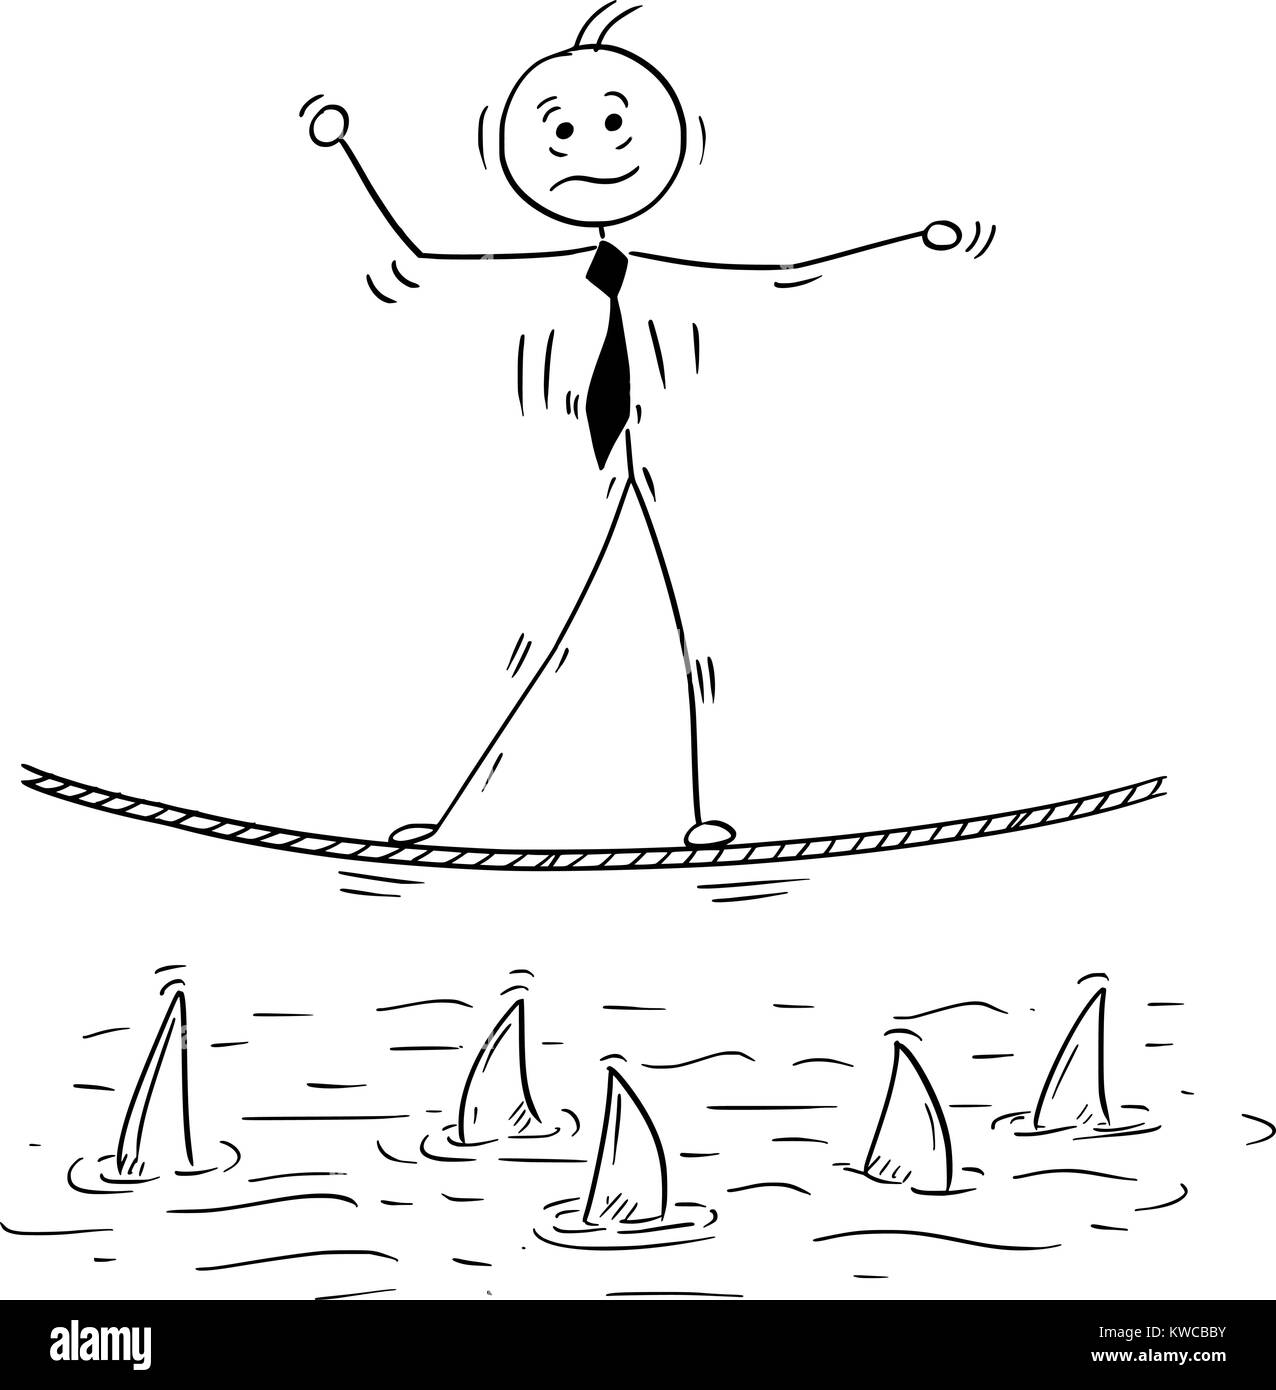 Cartoon stick man dessin illustration conceptuelle de business man balancing marche sur corde corde raide au-dessus de l'eau de requin. Illustration de Vecteur